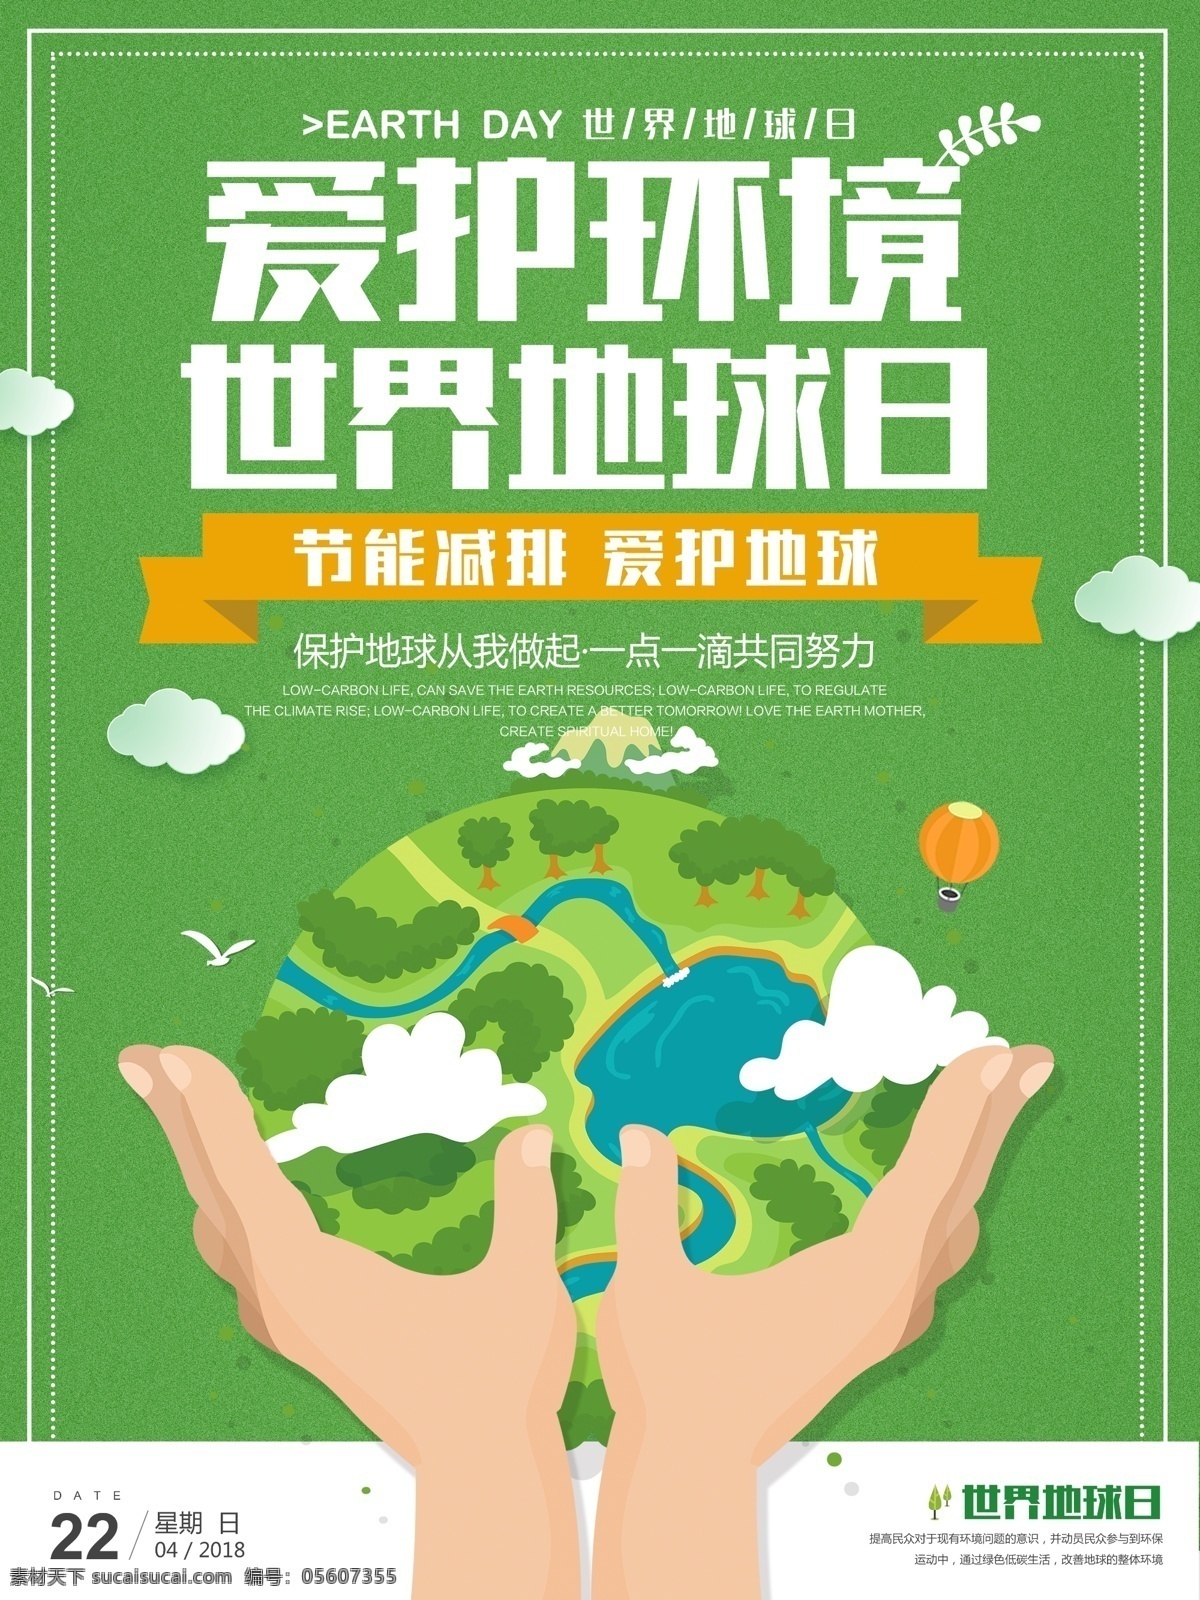 绿色 世界 地球日 环保 公益 海报 公益海报 简约 保护环境 植树造林 节能 低碳 地球 环保日 保护环境海报 世界地球日